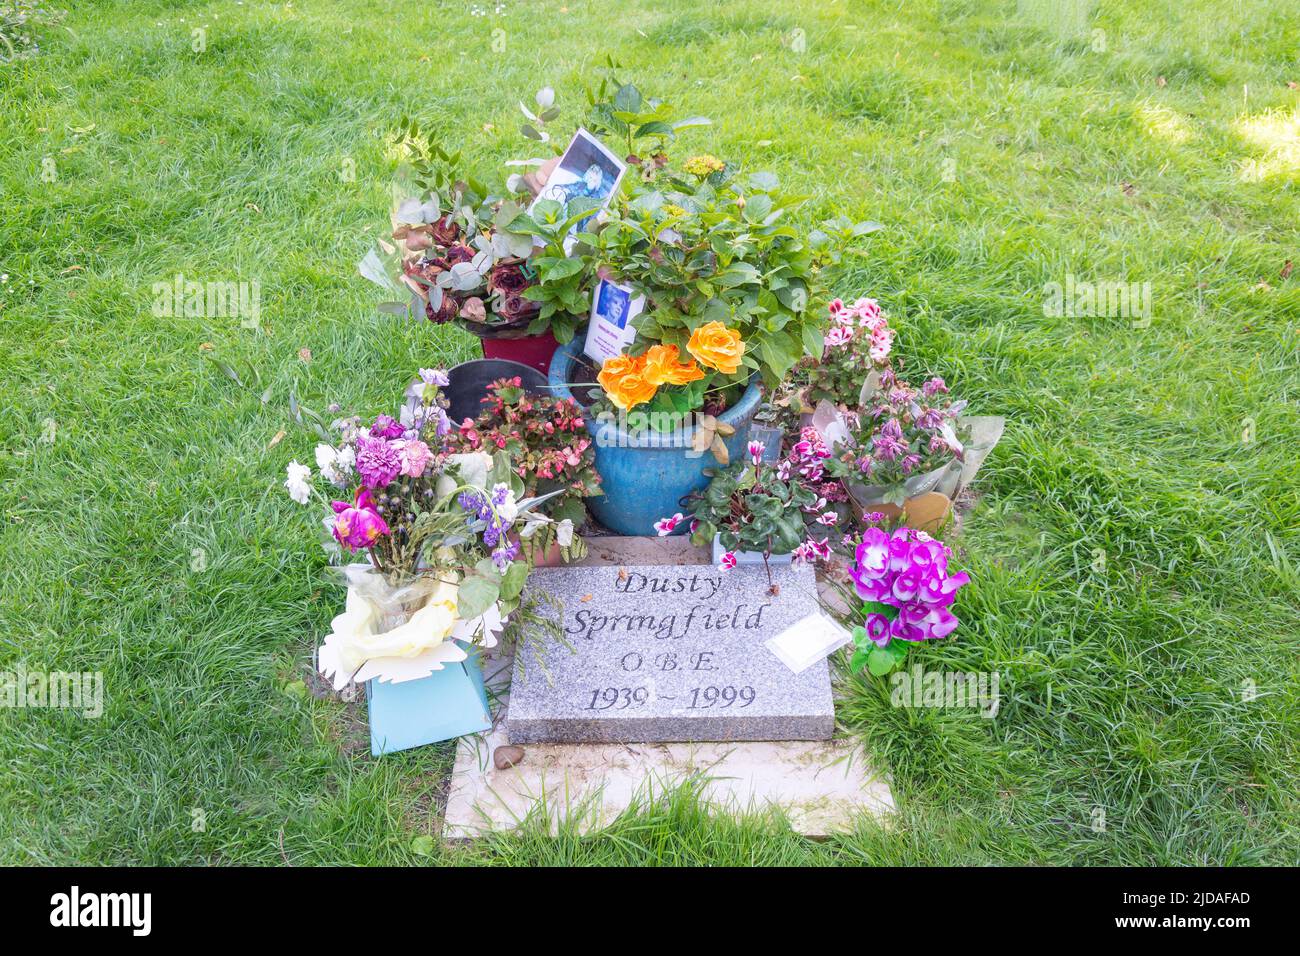 Tombe de la chanteuse Dusty Springfield à l'église paroissiale de St Mary, Henley-on-Thames, Oxfordshire, Angleterre, Royaume-Uni Banque D'Images